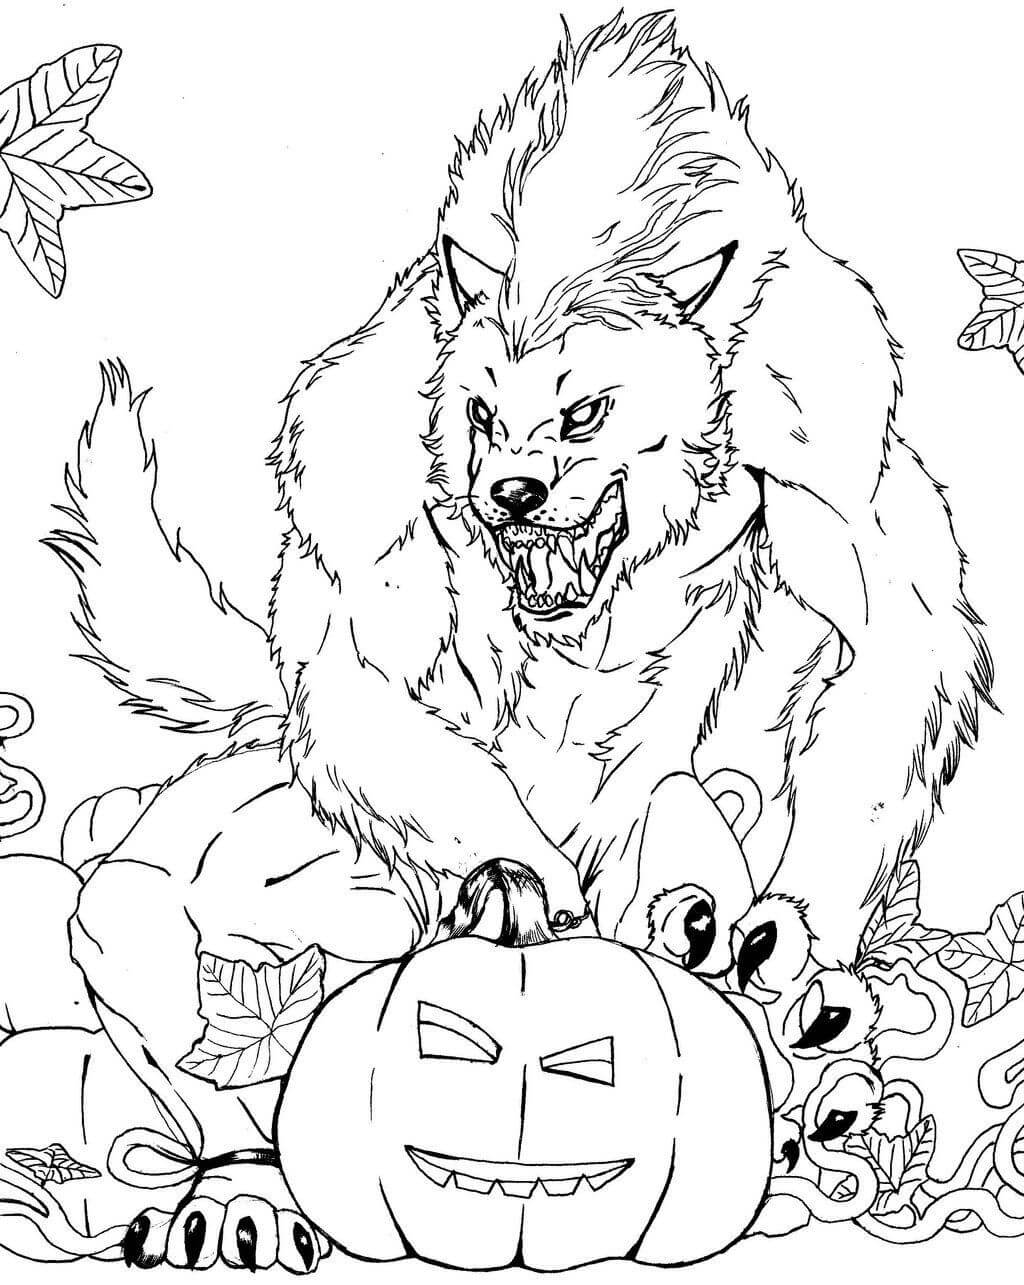 무서운 늑대인간 coloring page